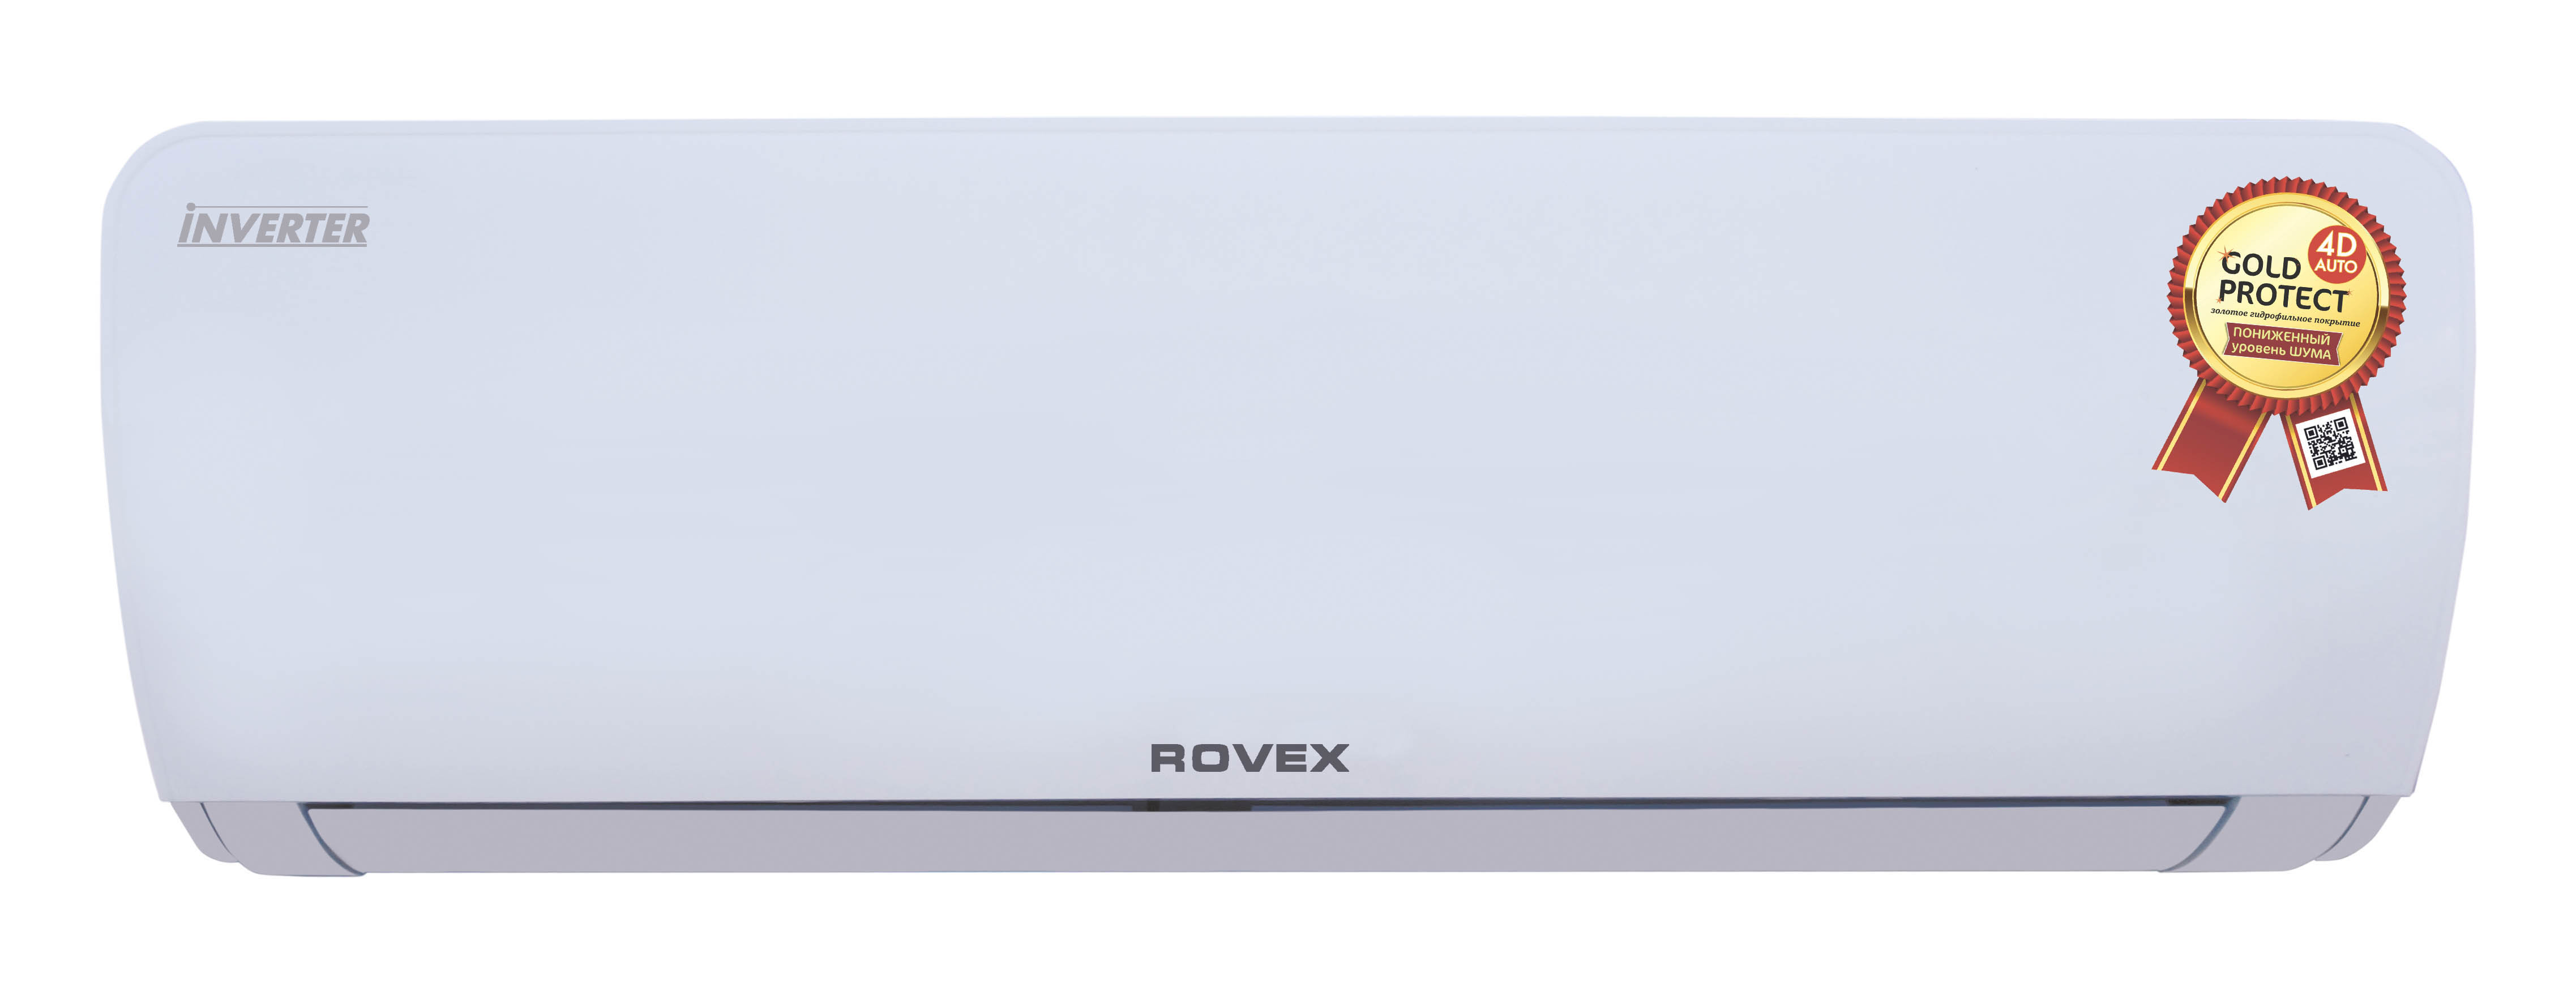 Rs24 ru product. Сплит-система RS-07cbs4. Rovex RS-07cbs4. Сплит-система Rovex Smart RS-07pxs1. Кондиционер настенный Rovex RS-07hst2.